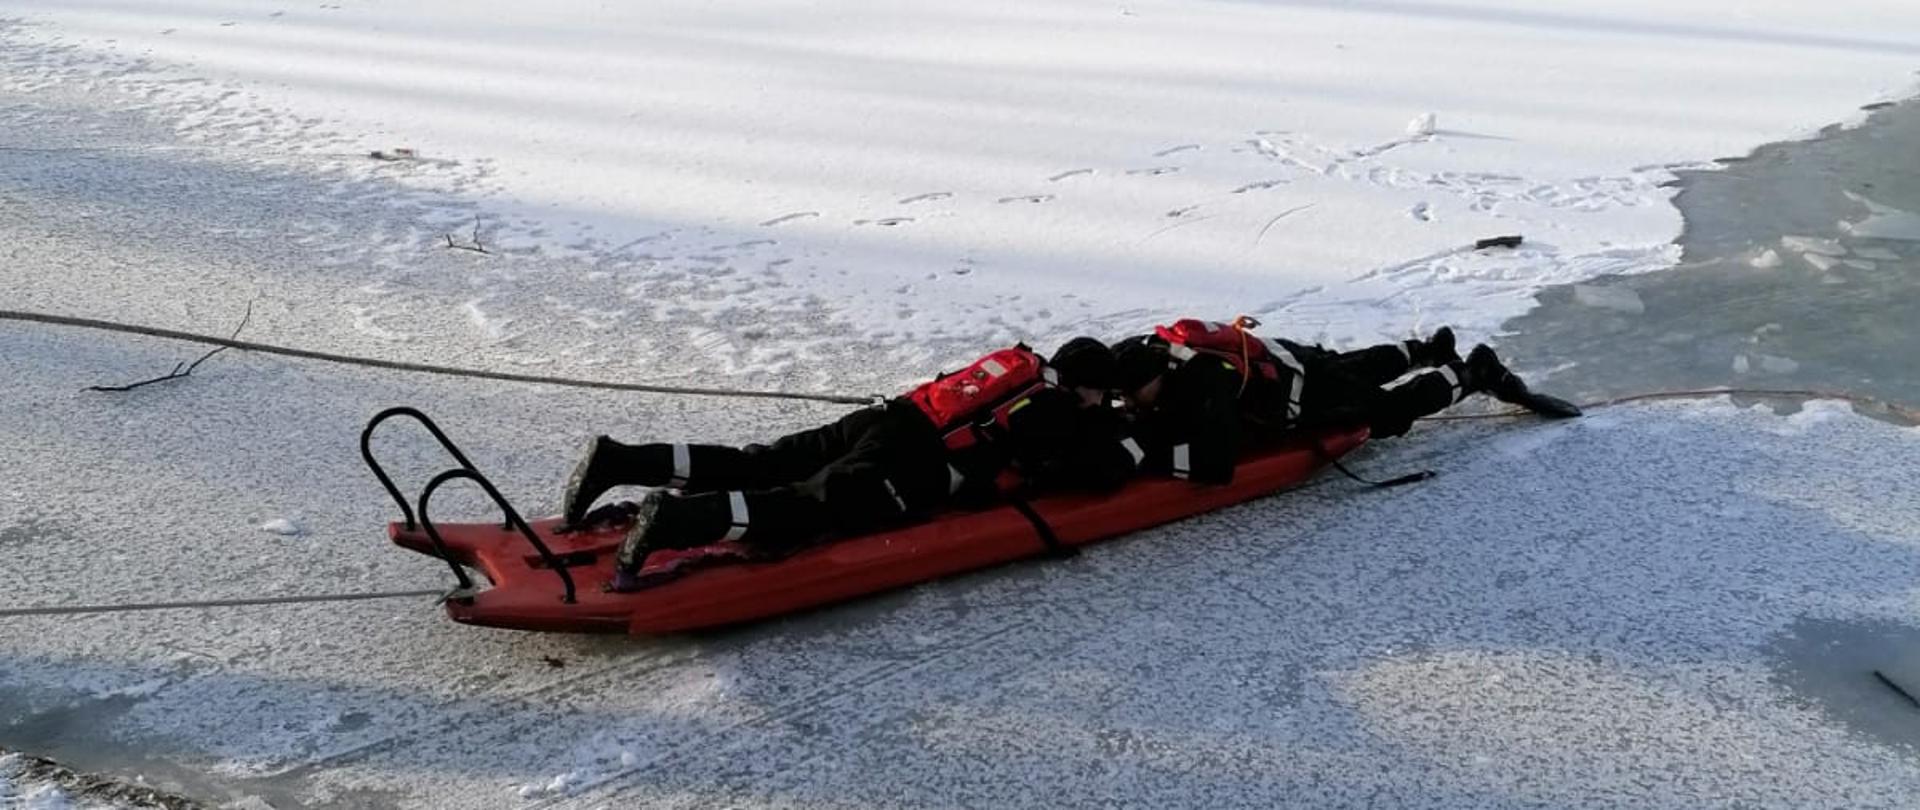 Strażacy na ćwiczeniach lodowych na lodzie z użyciem sań lodowych